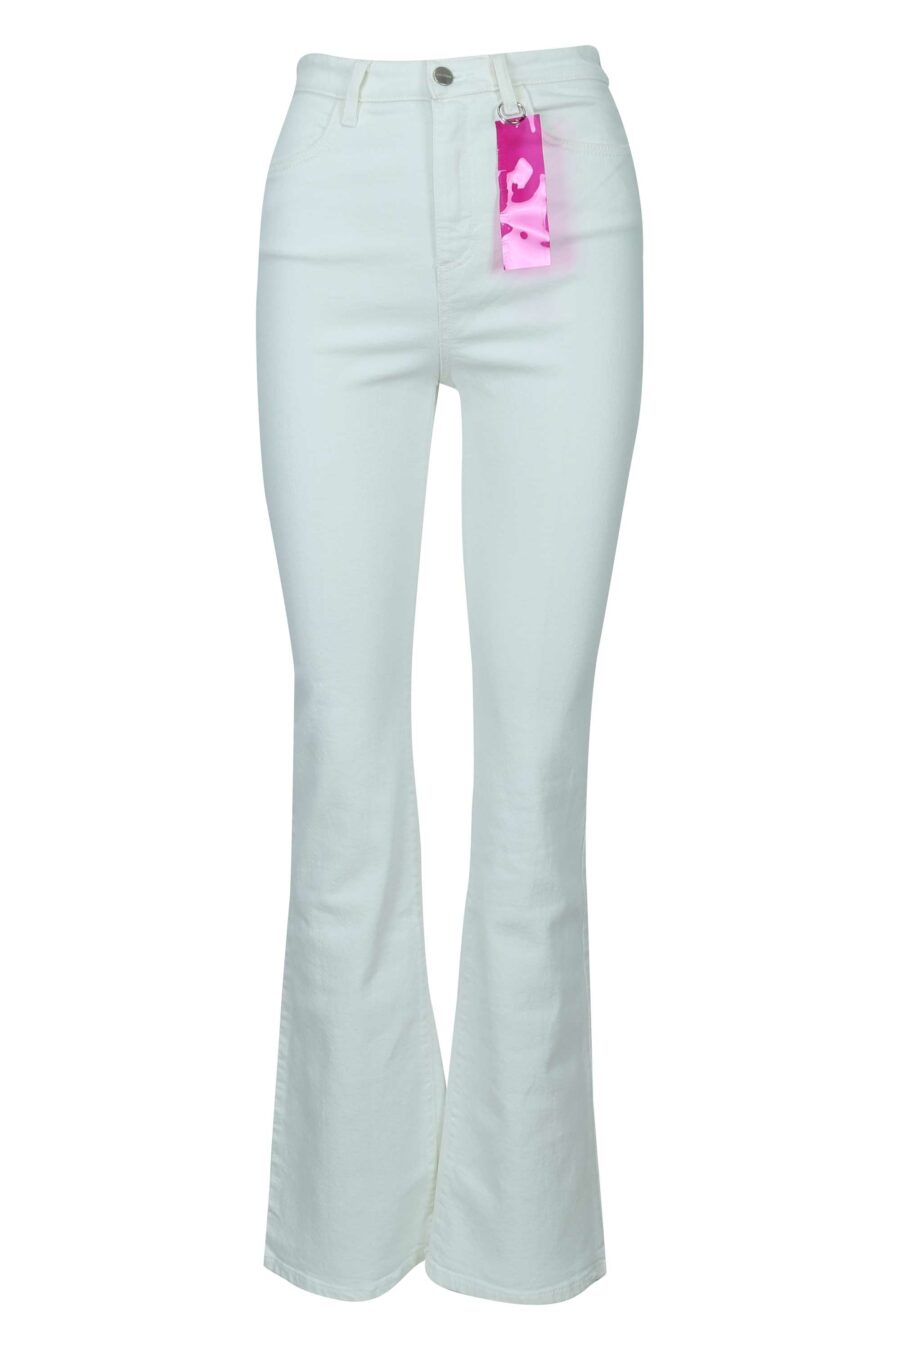 Pantalón blanco "Natie" con etiqueta fucsia - 8052691163405